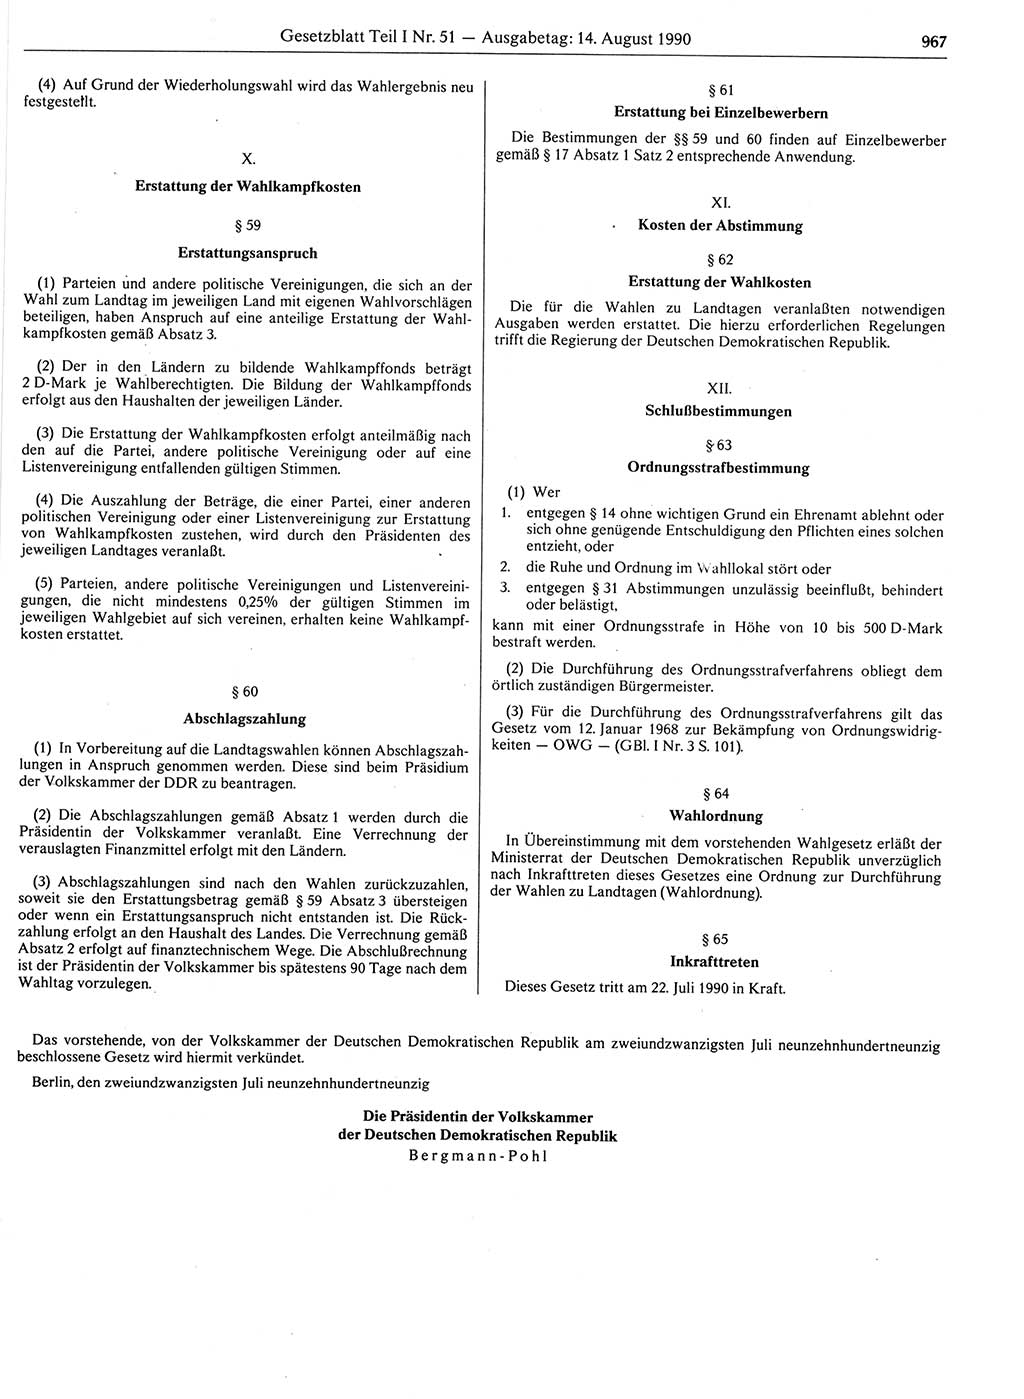 Gesetzblatt (GBl.) der Deutschen Demokratischen Republik (DDR) Teil Ⅰ 1990, Seite 967 (GBl. DDR Ⅰ 1990, S. 967)